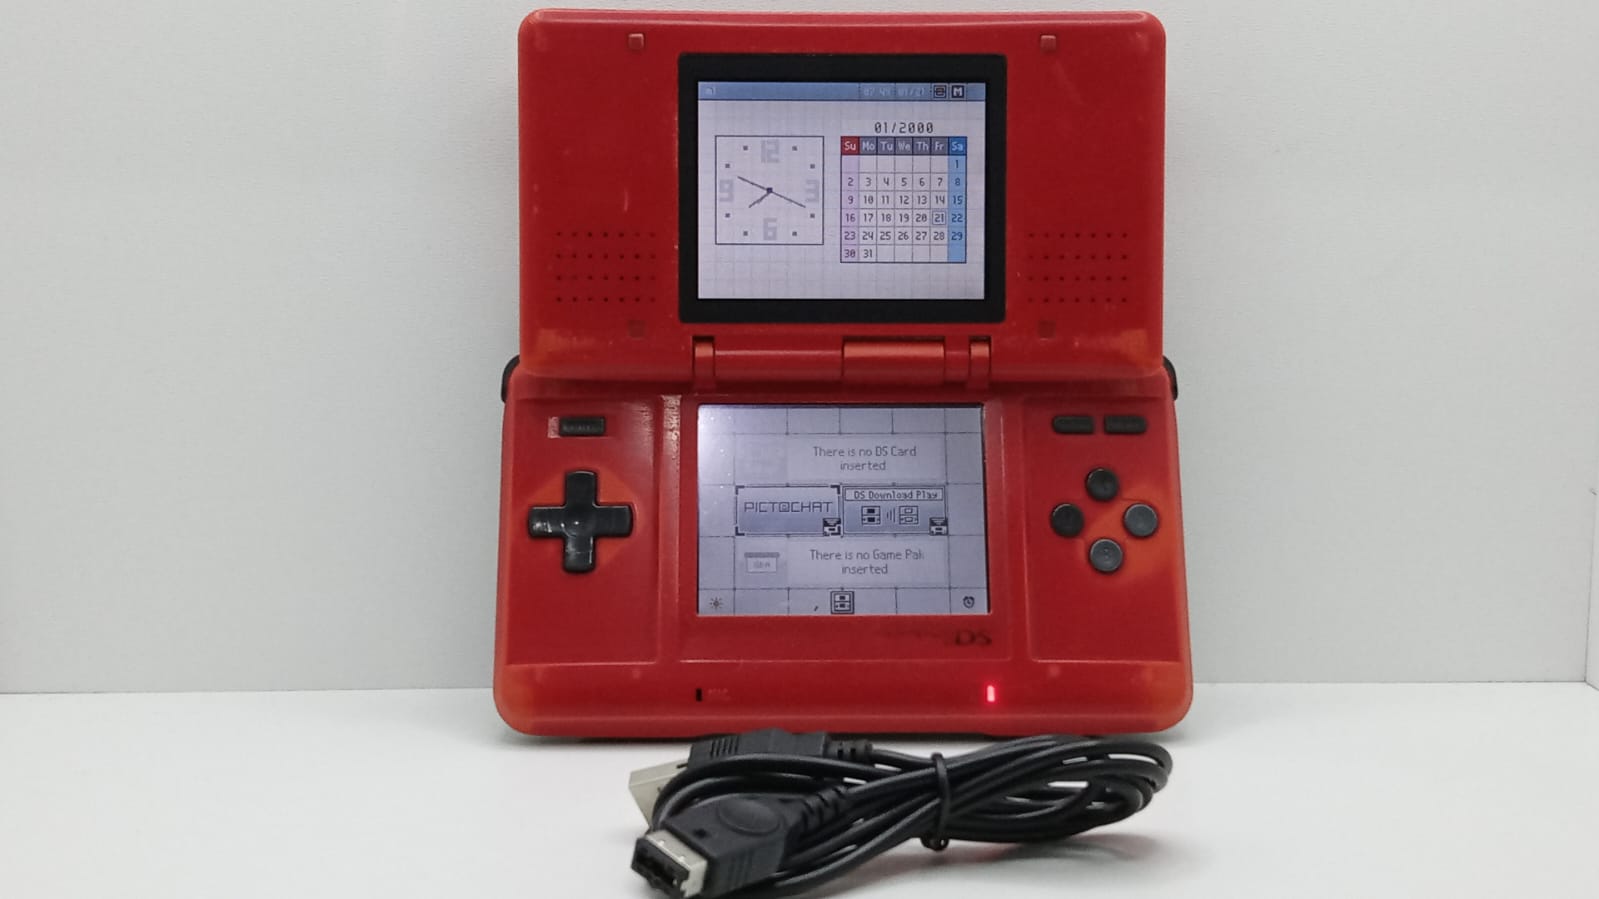 Consola Nintendo Nintendo DS Original